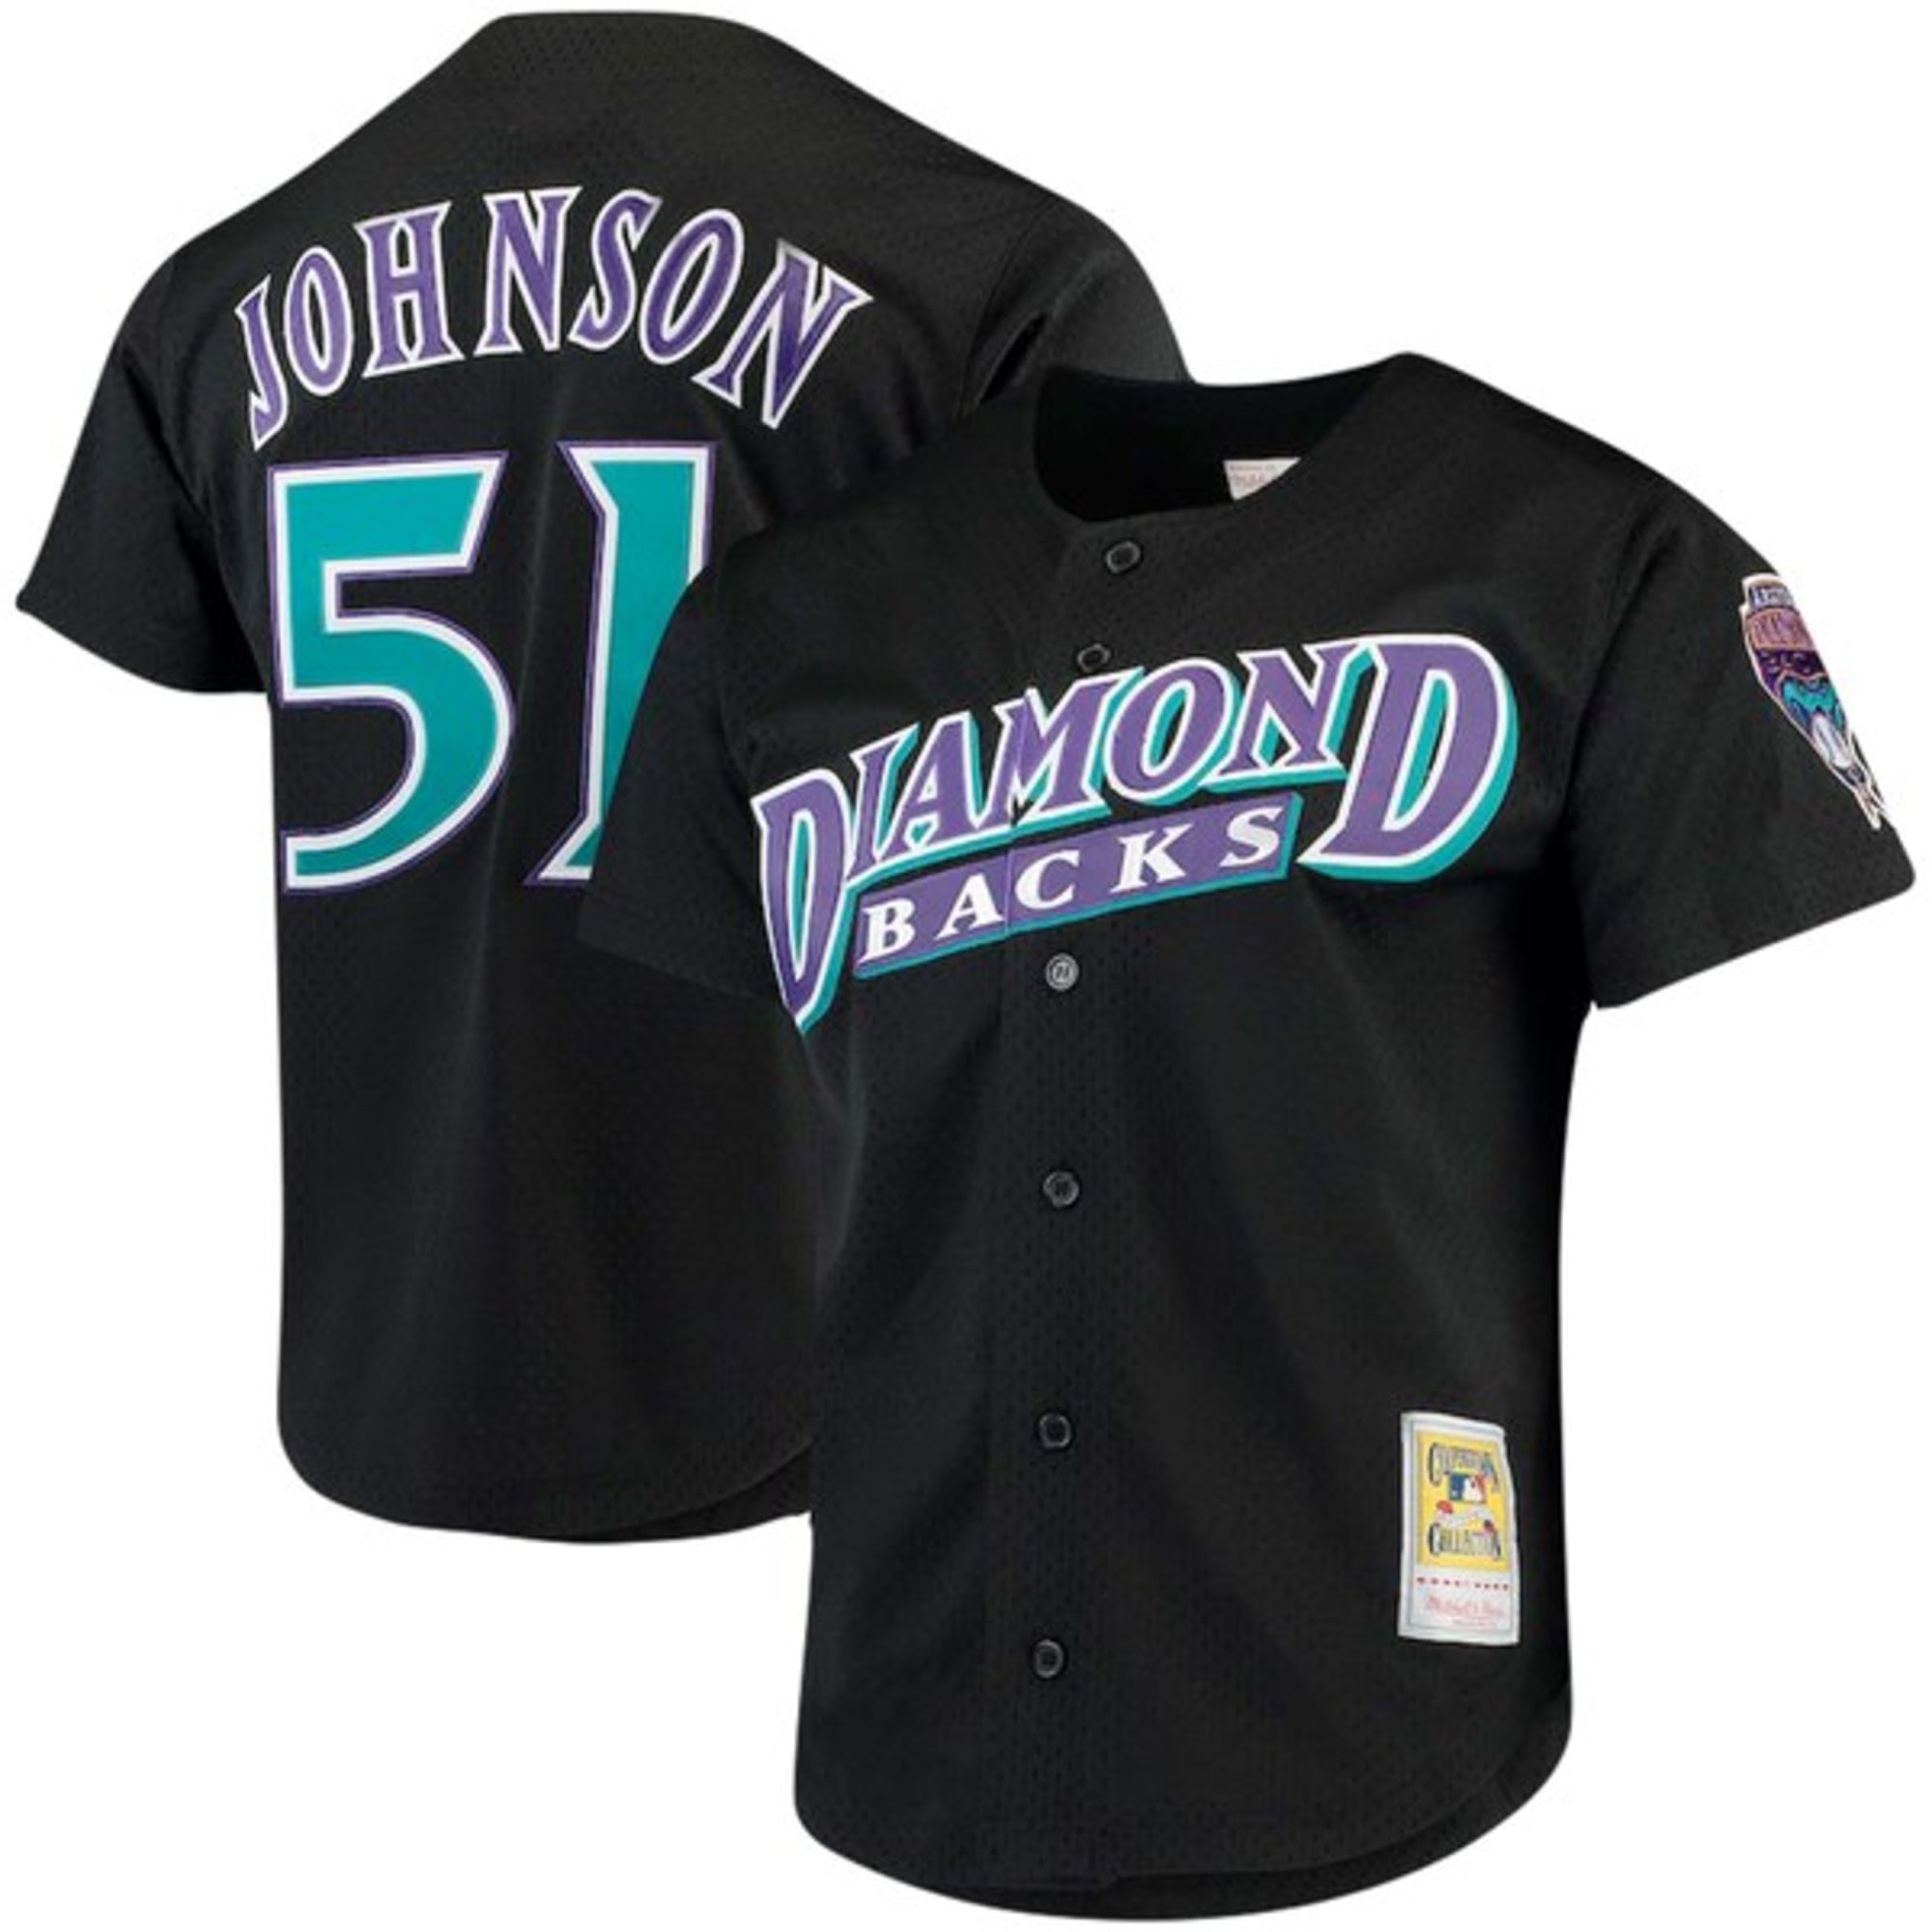 arizona diamondbacks uniforms 2019